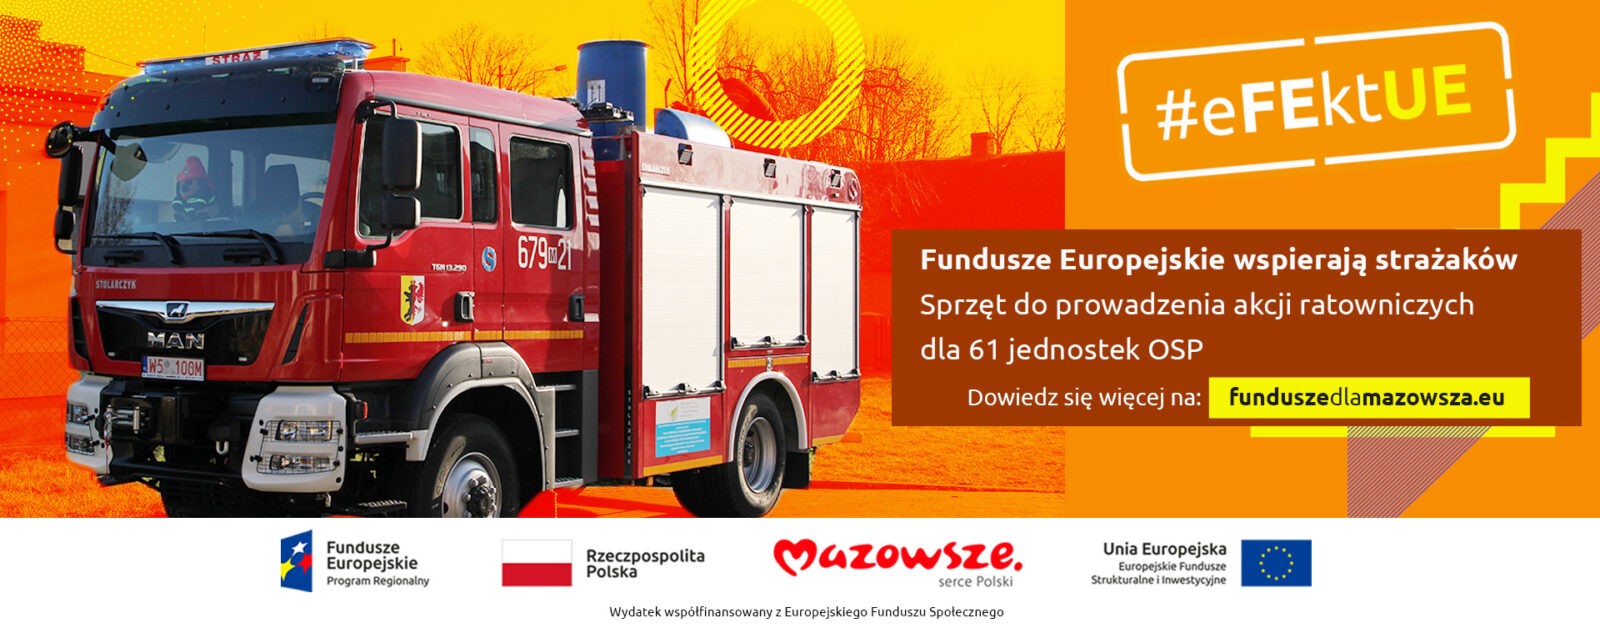 Samochód ratowniczo-gaśniczy zakupiony ze środków w ramach funduszy europejskich